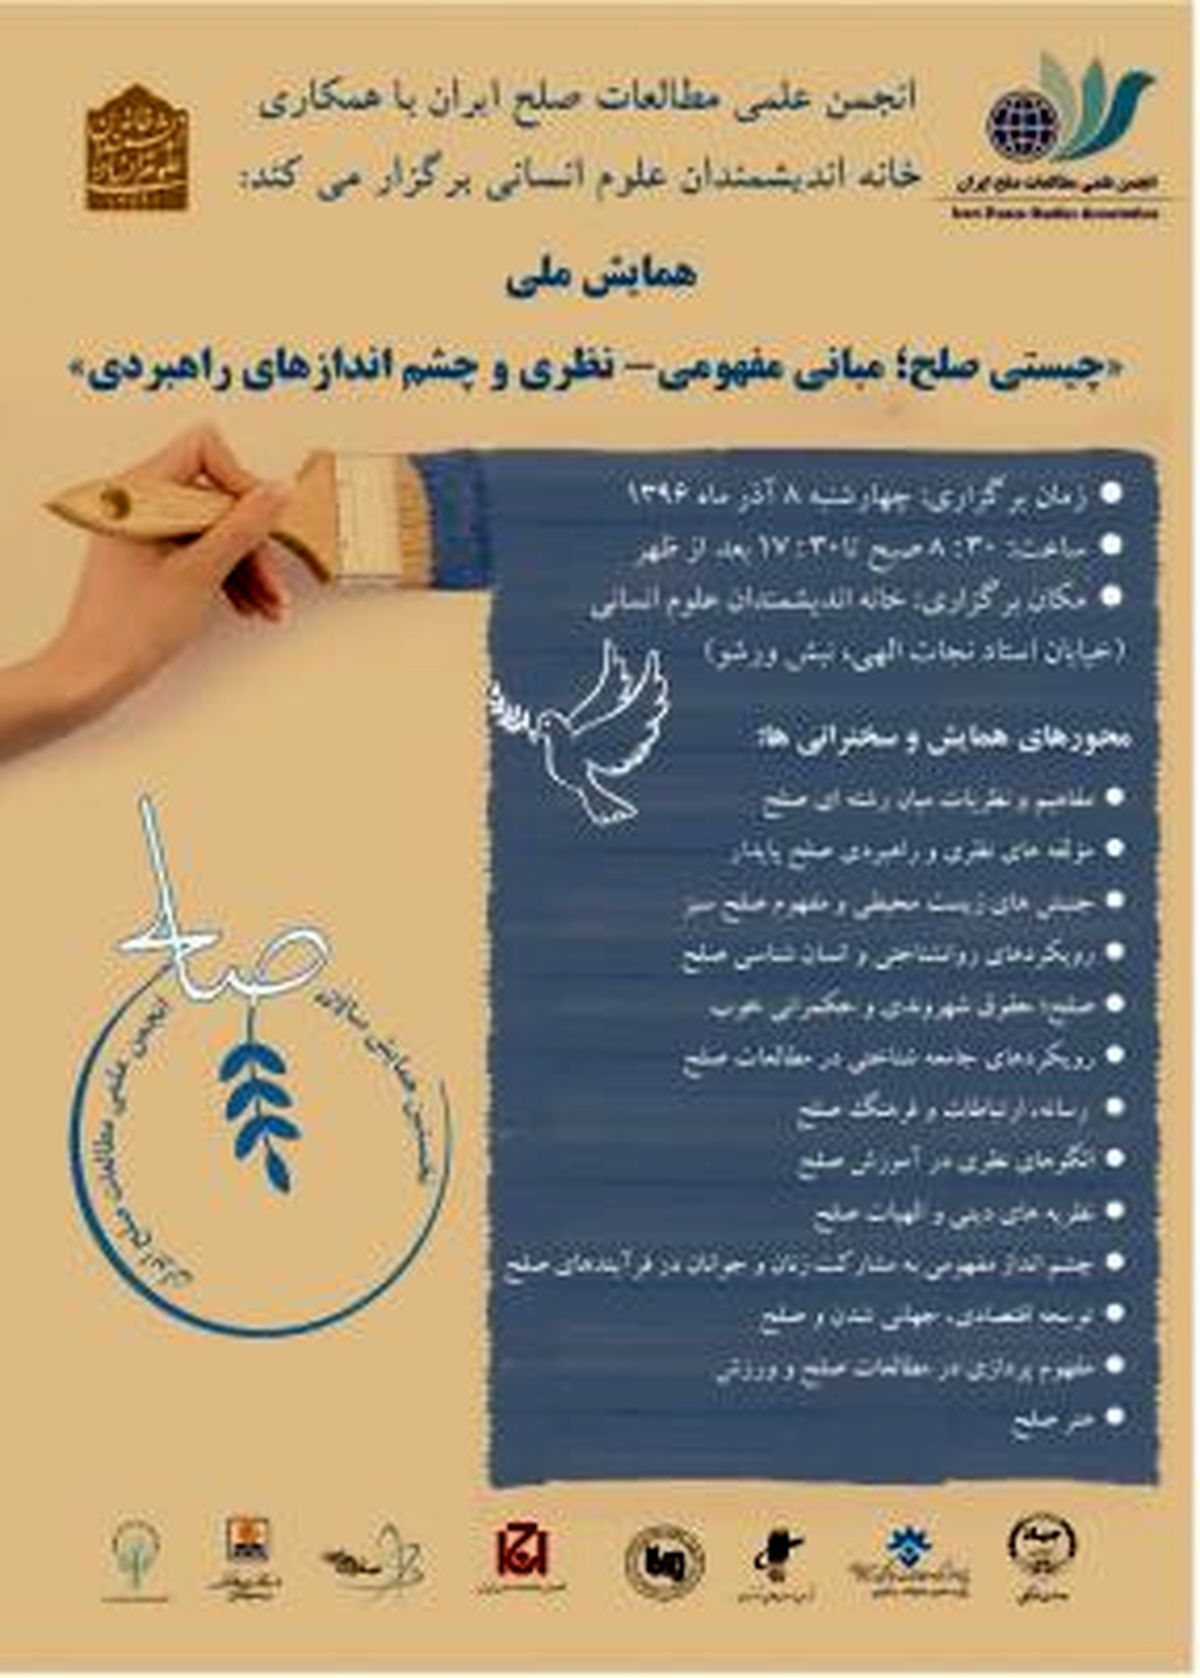 برگزاری اولین همایش صلح در ایران